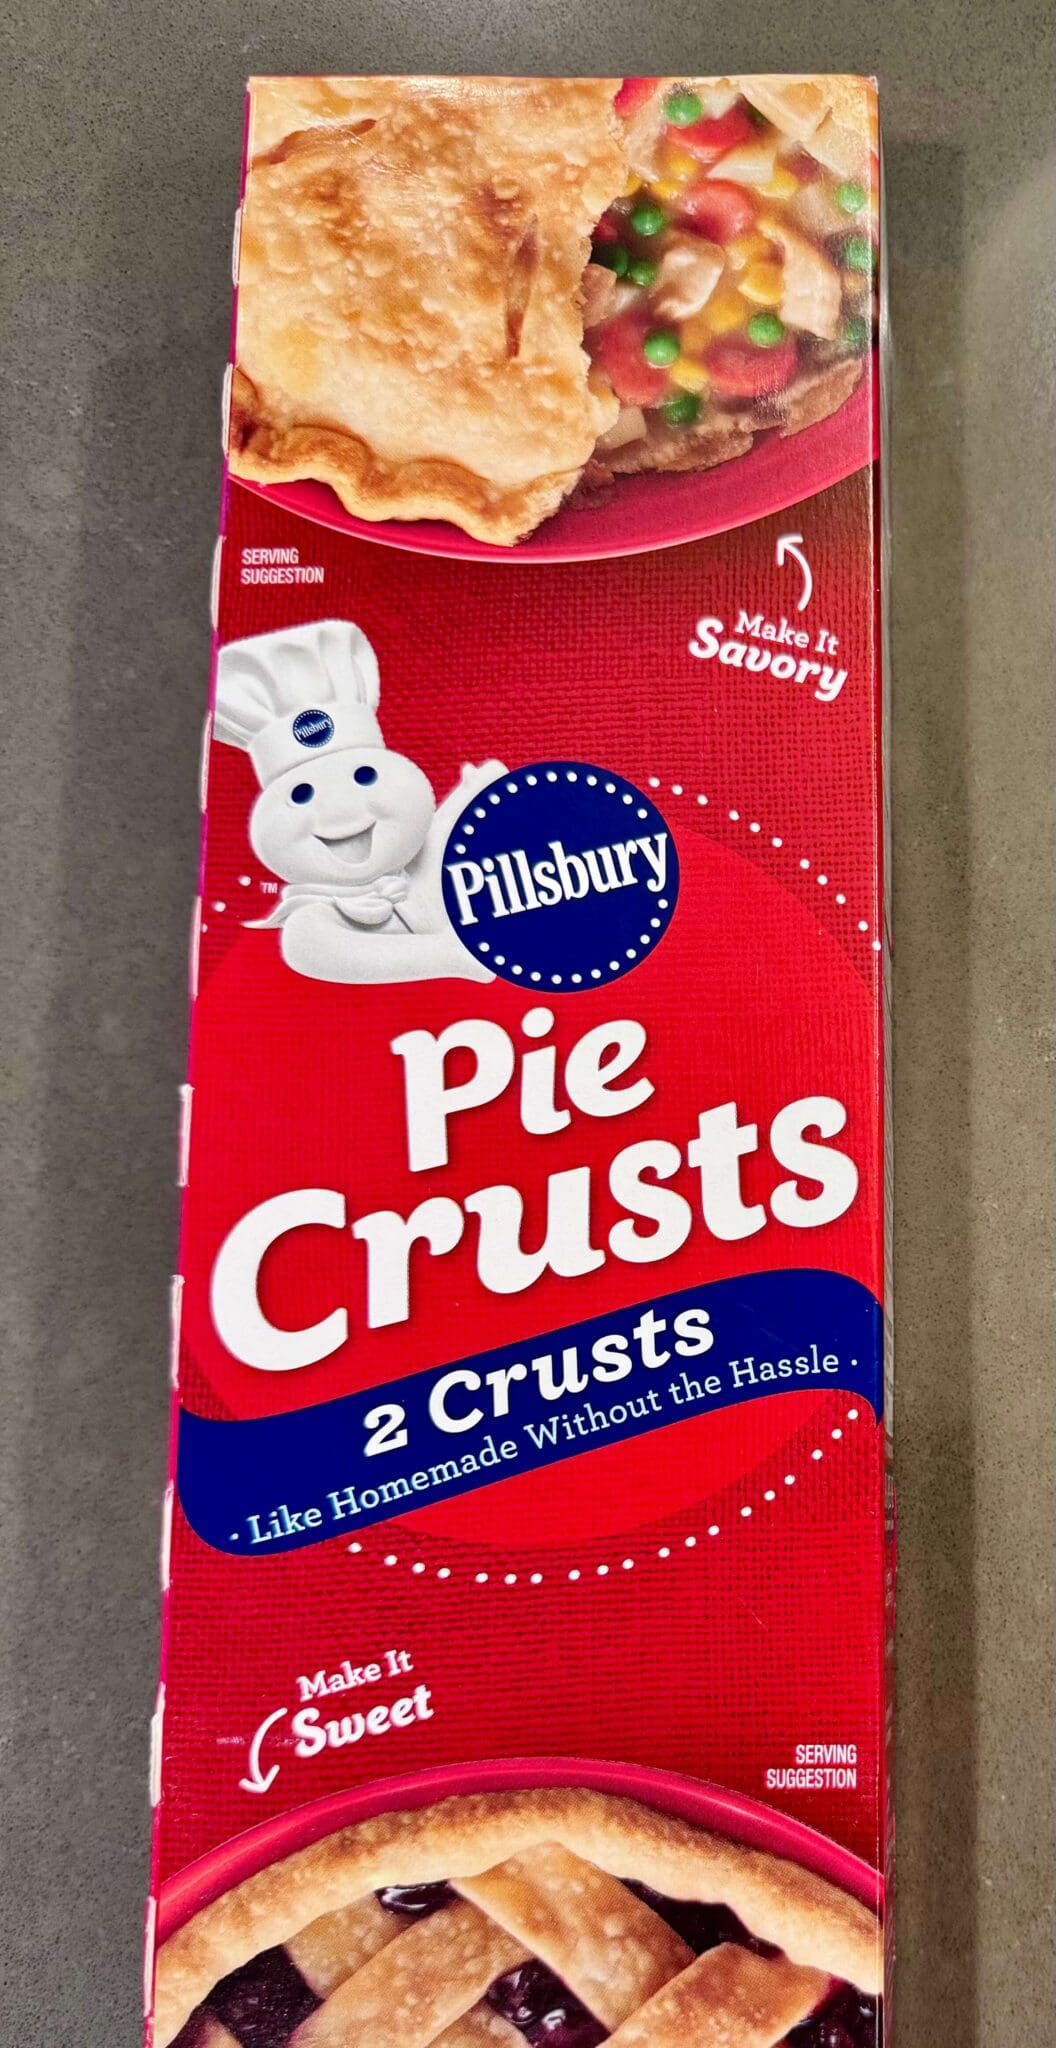 Pillsbury pie crust